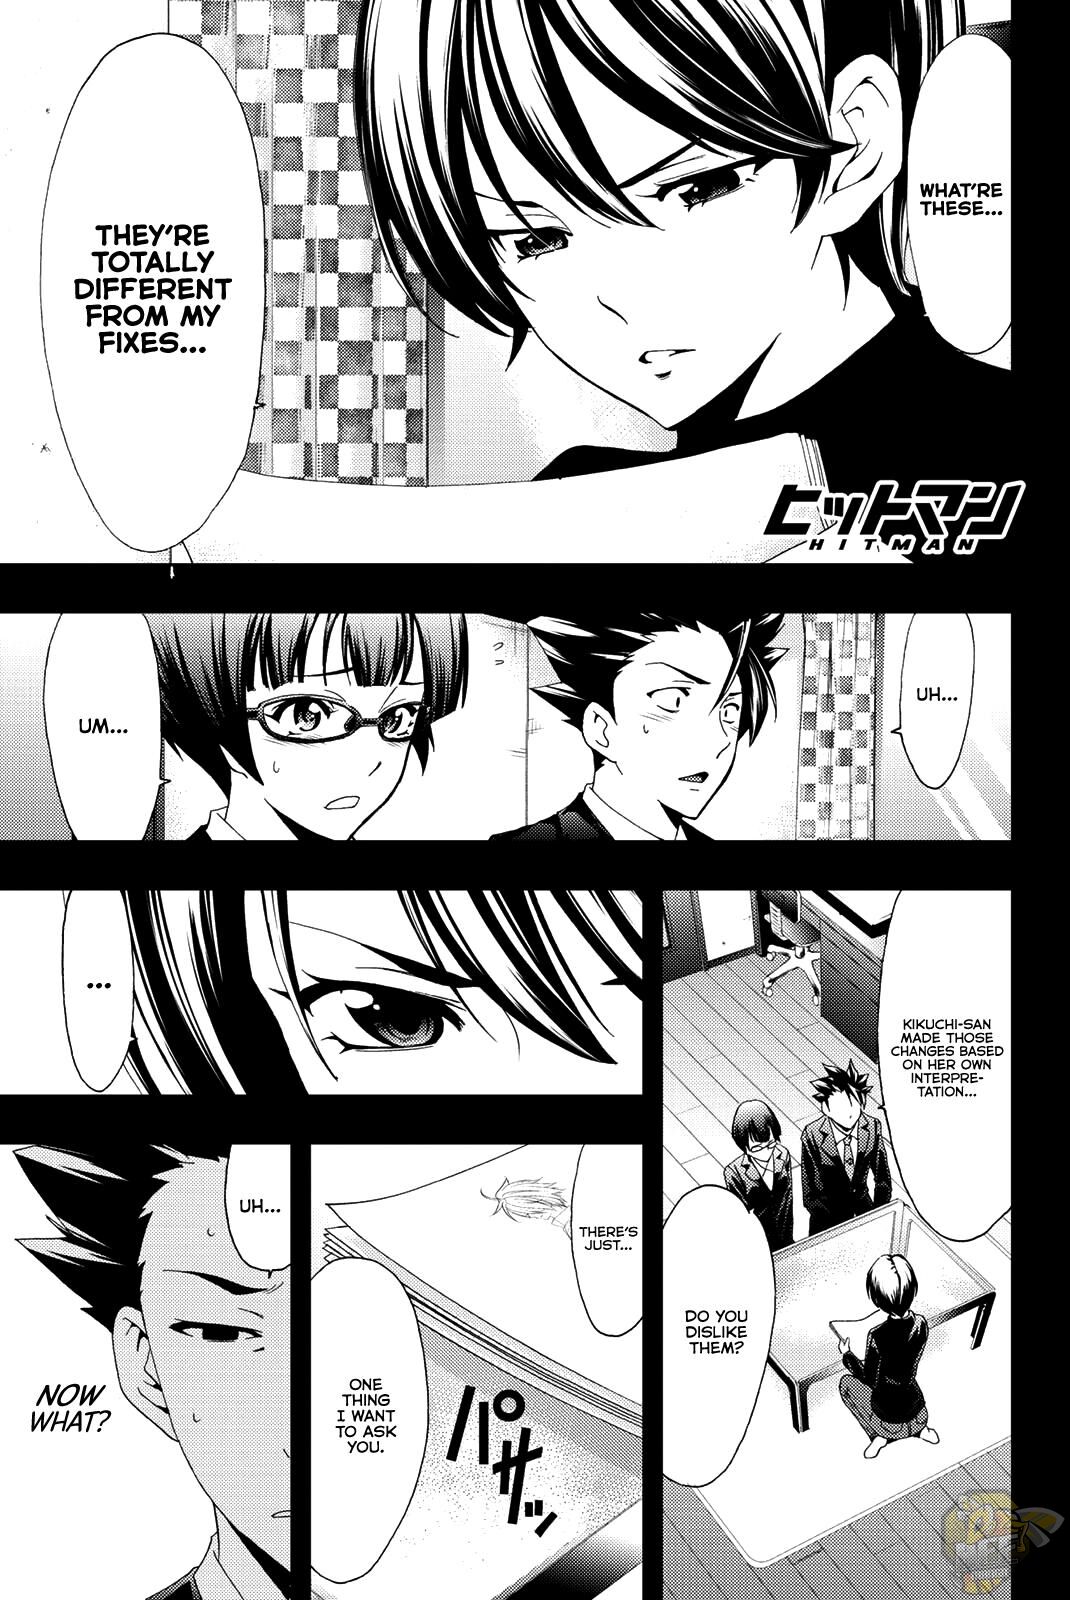 Hitman (Kouji Seo) - Page 1